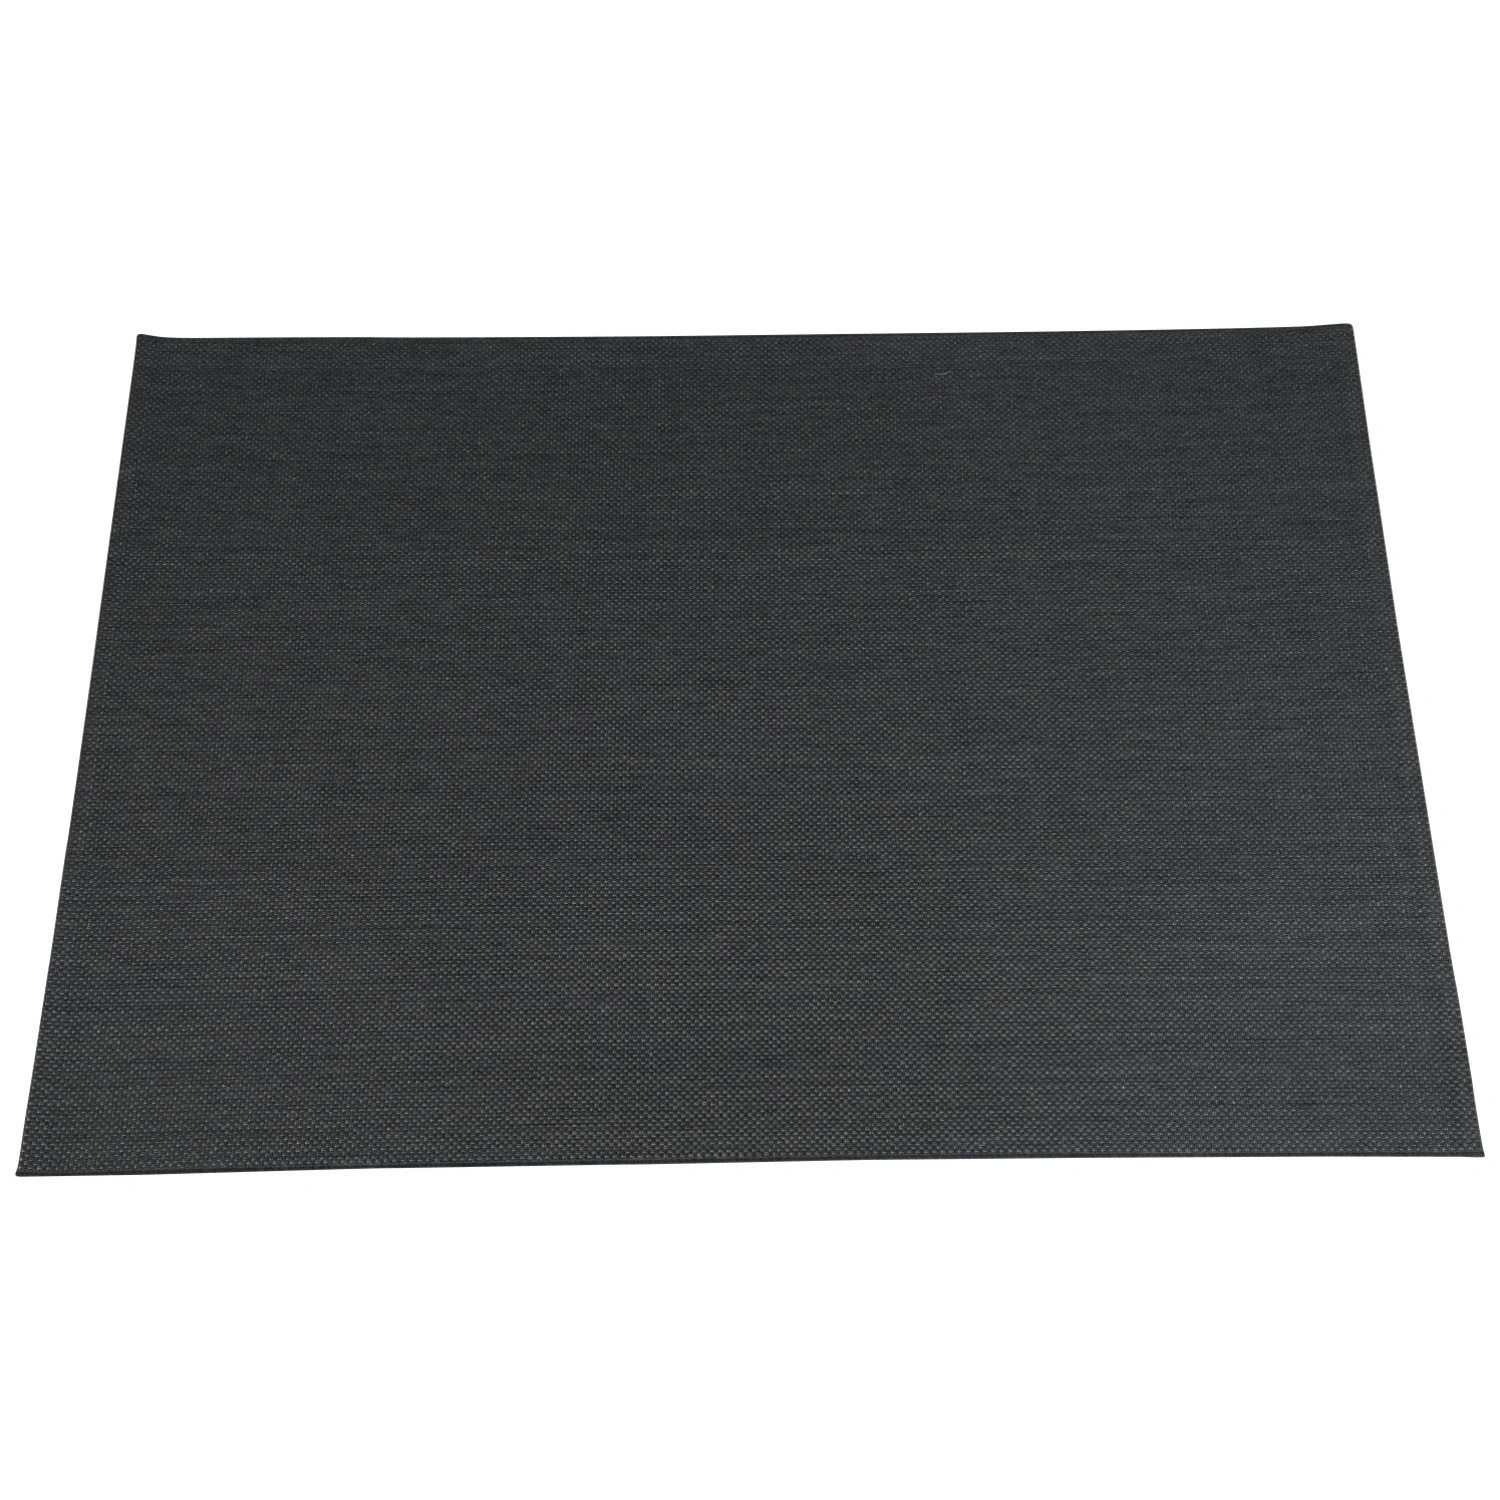 GARDEN IMPRESSIONS Outdoor-Teppich »Portmany«, BxL: 170 x 120 cm, schwarz